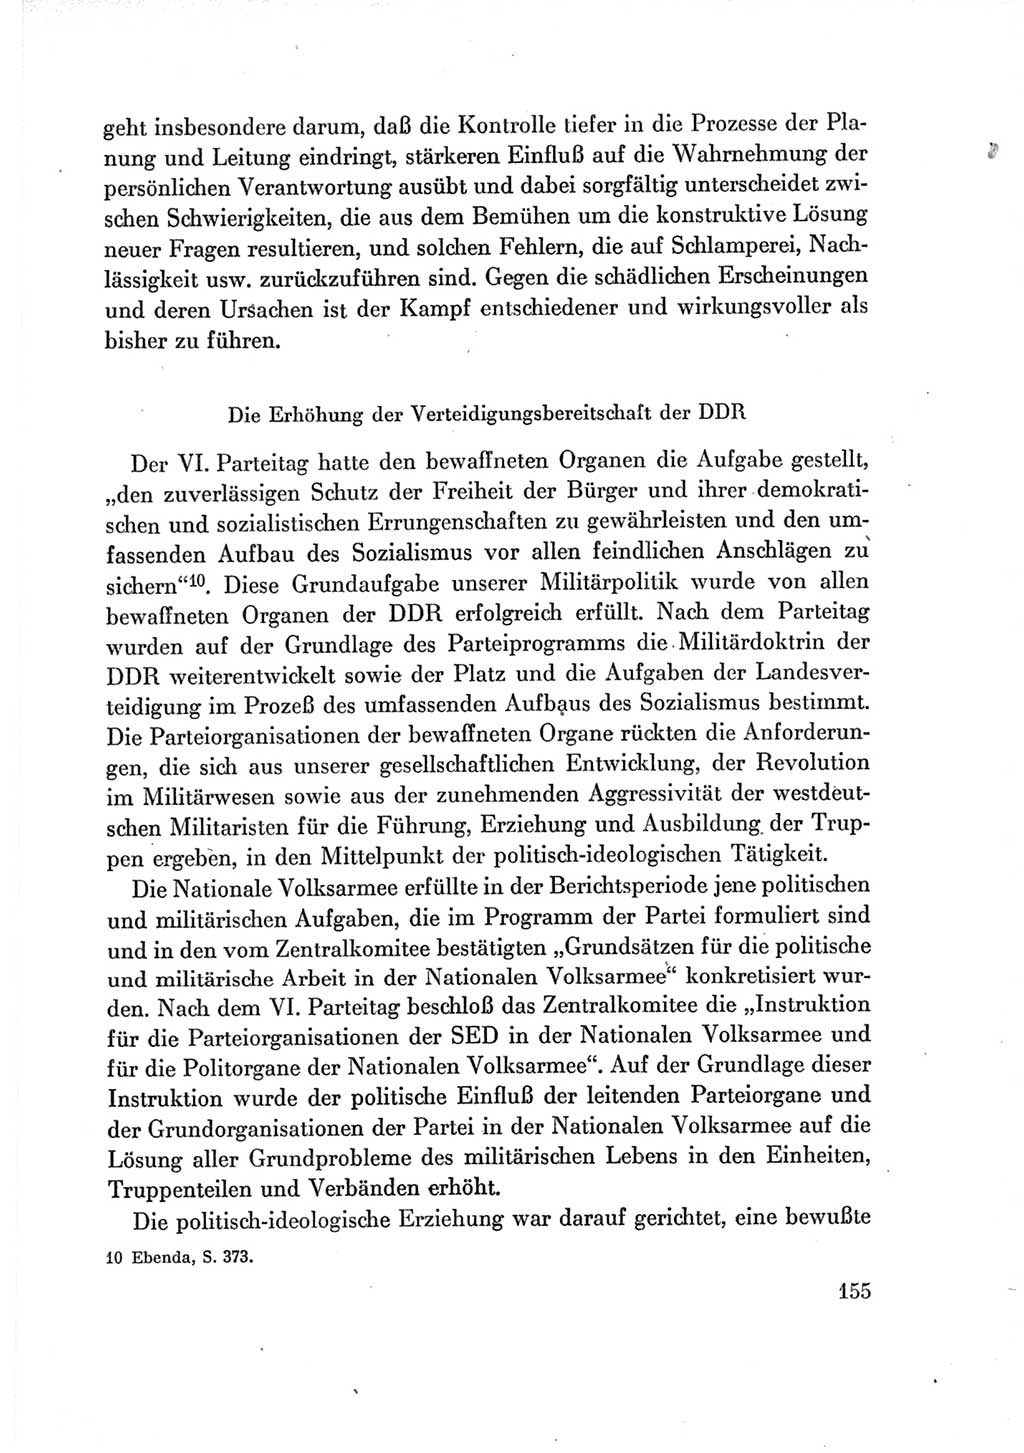 Protokoll der Verhandlungen des Ⅶ. Parteitages der Sozialistischen Einheitspartei Deutschlands (SED) [Deutsche Demokratische Republik (DDR)] 1967, Band Ⅳ, Seite 155 (Prot. Verh. Ⅶ. PT SED DDR 1967, Bd. Ⅳ, S. 155)